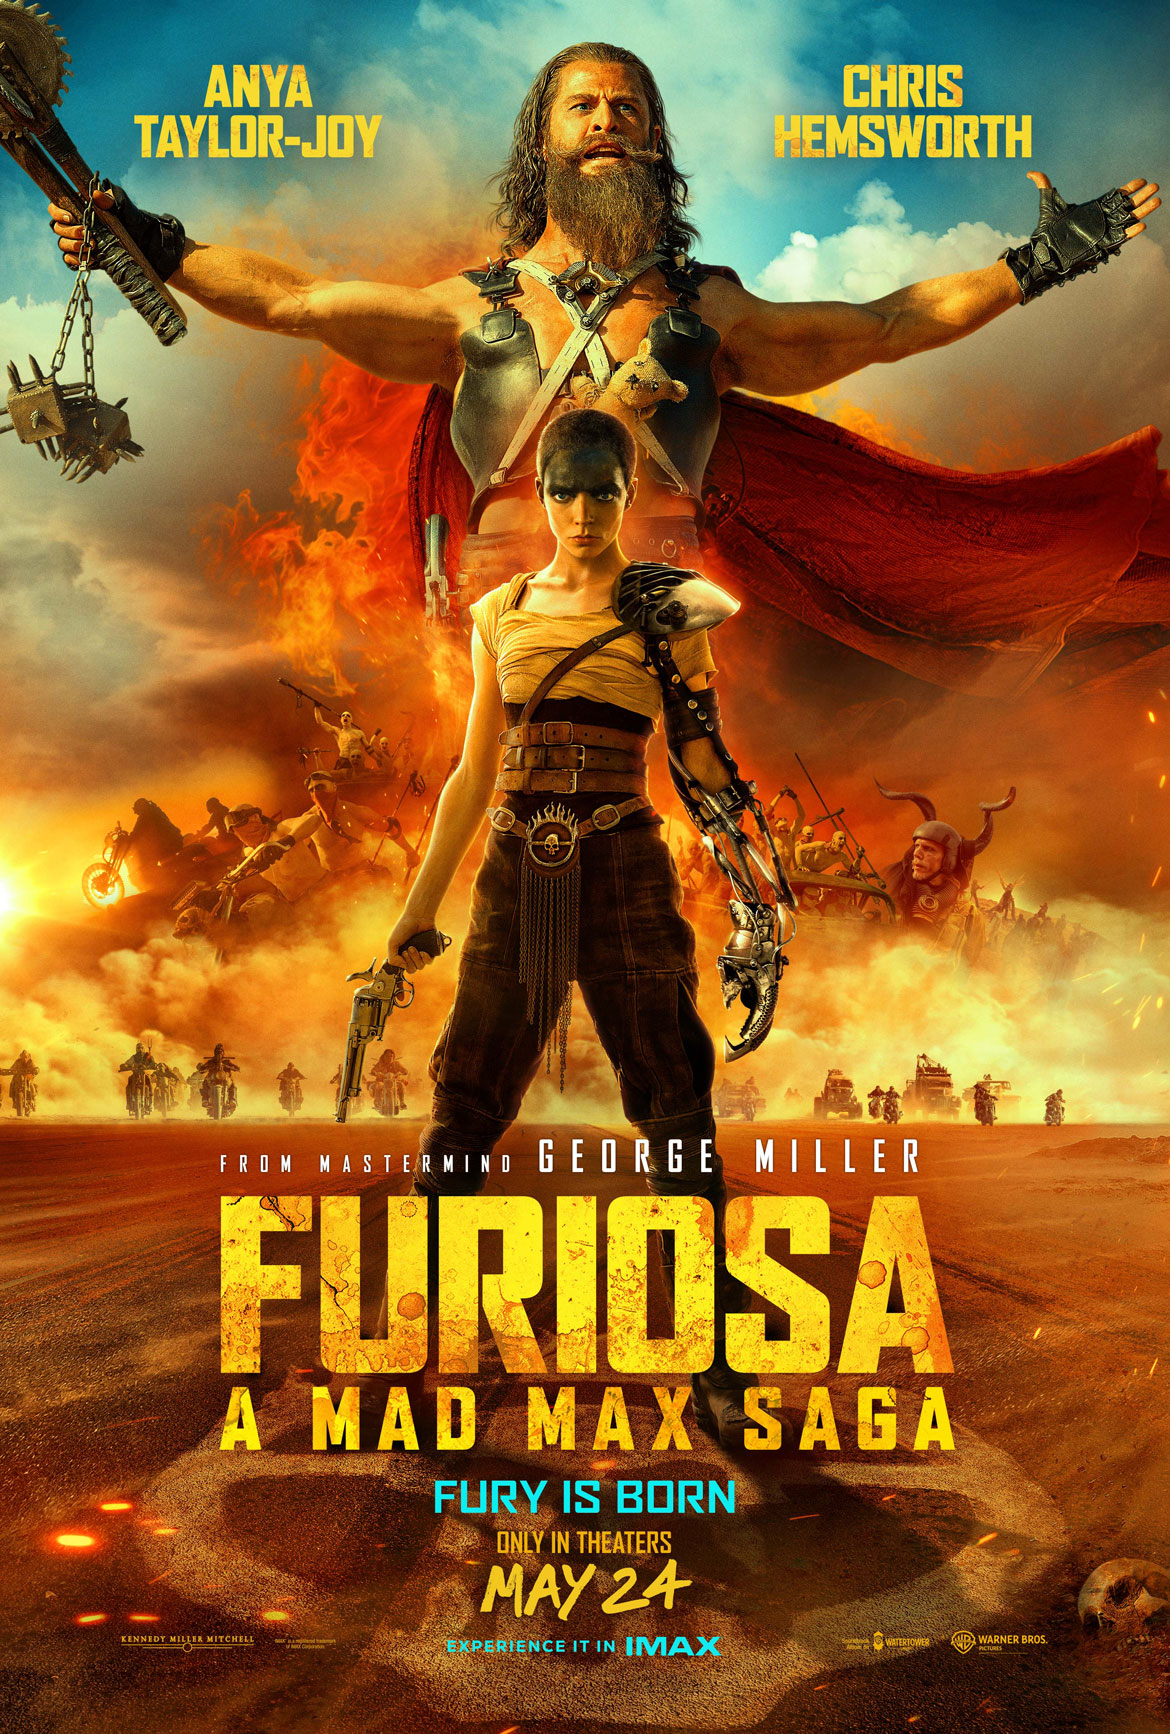 “Furiosa: A Mad Max Saga"